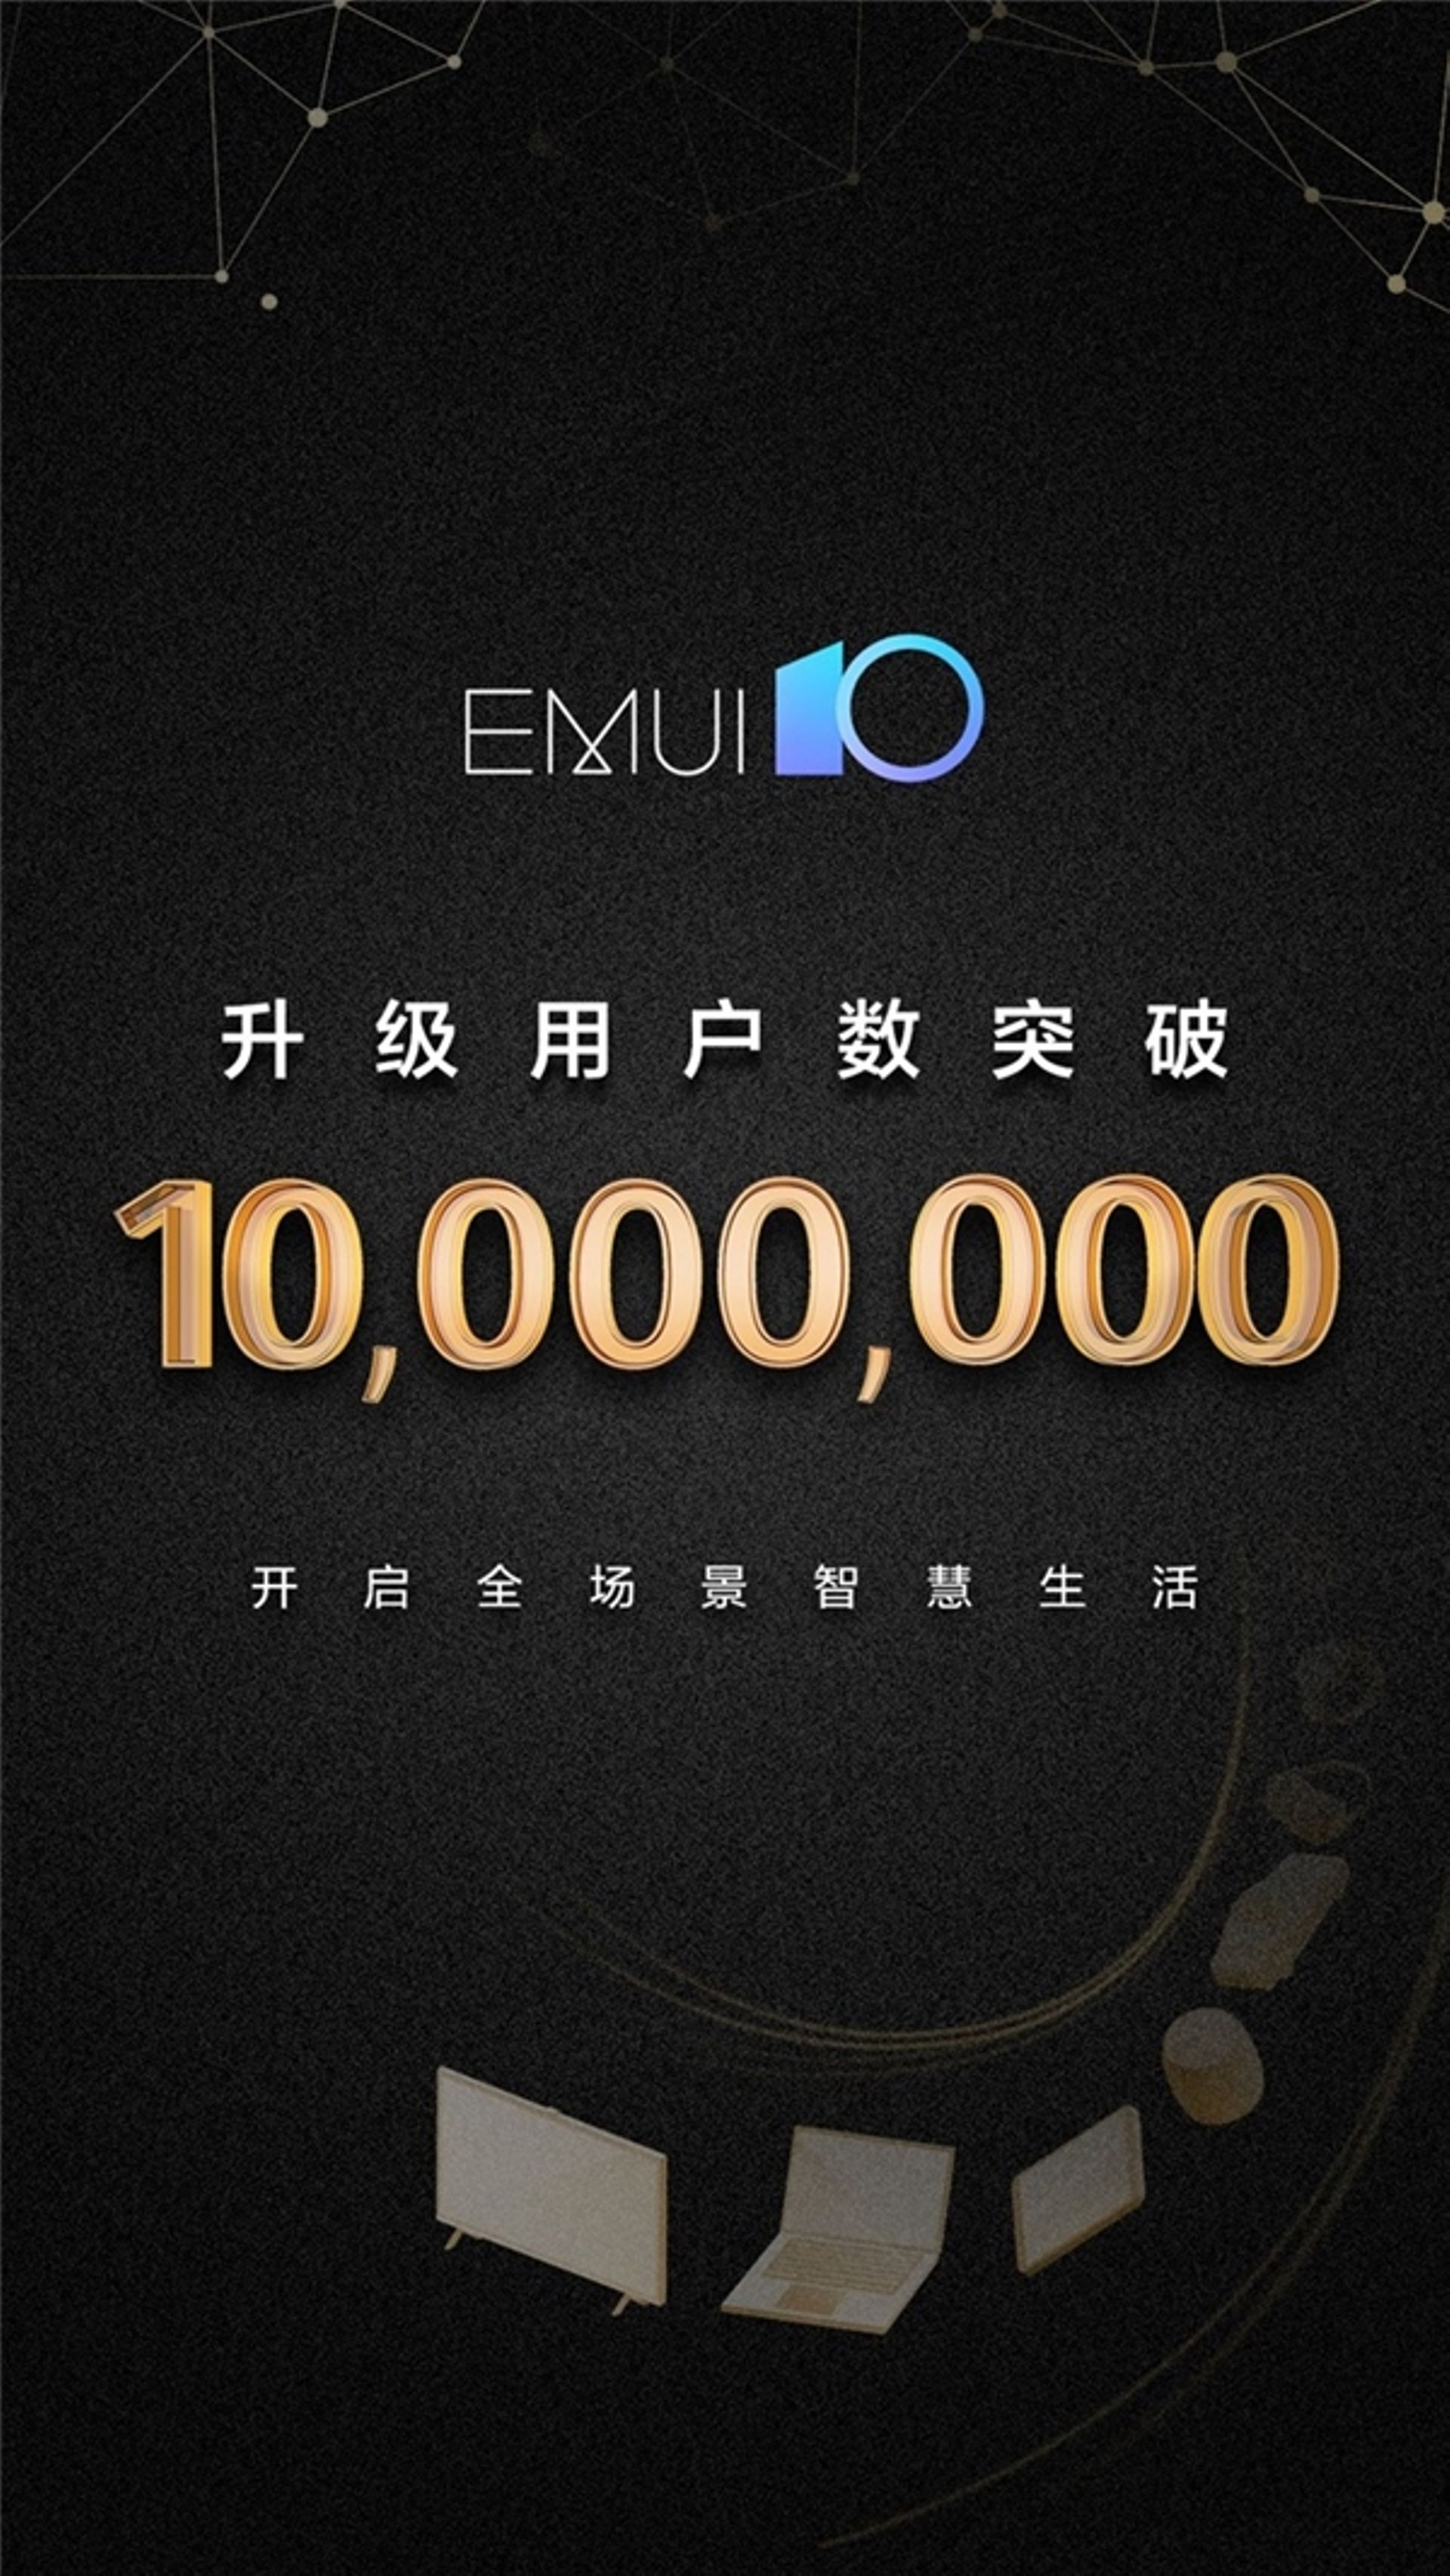 Huawei revendique plus de 10 millions de smartphones sous EMUI 10